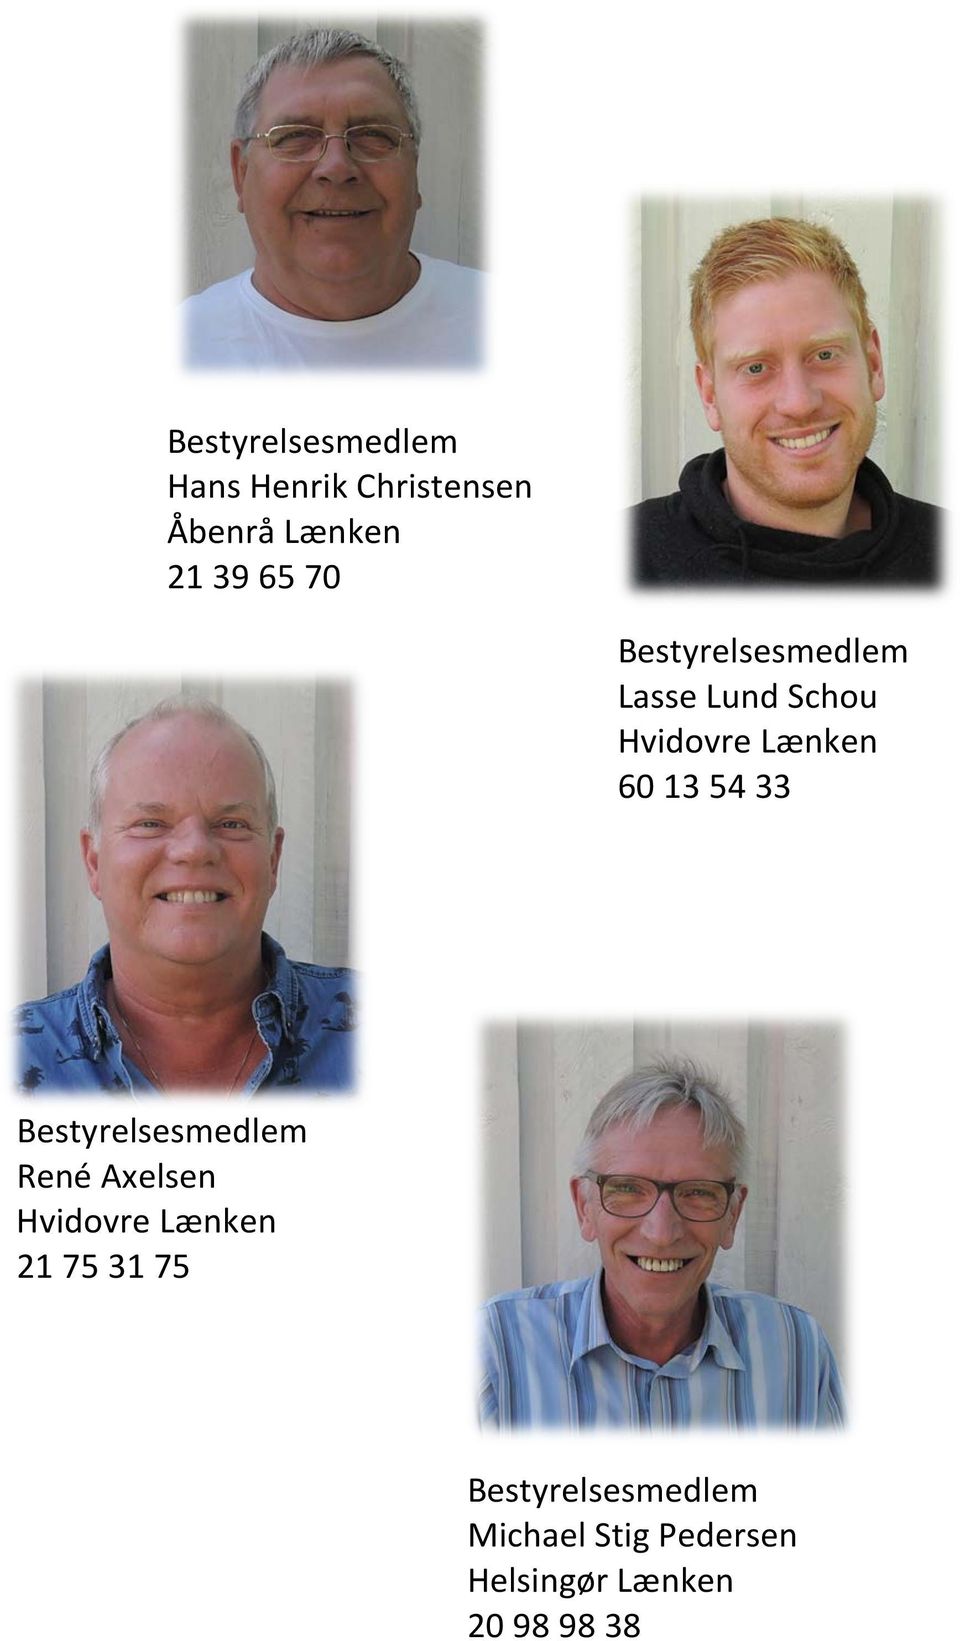 33 René Axelsen Hvidovre Lænken 21 75 31 75